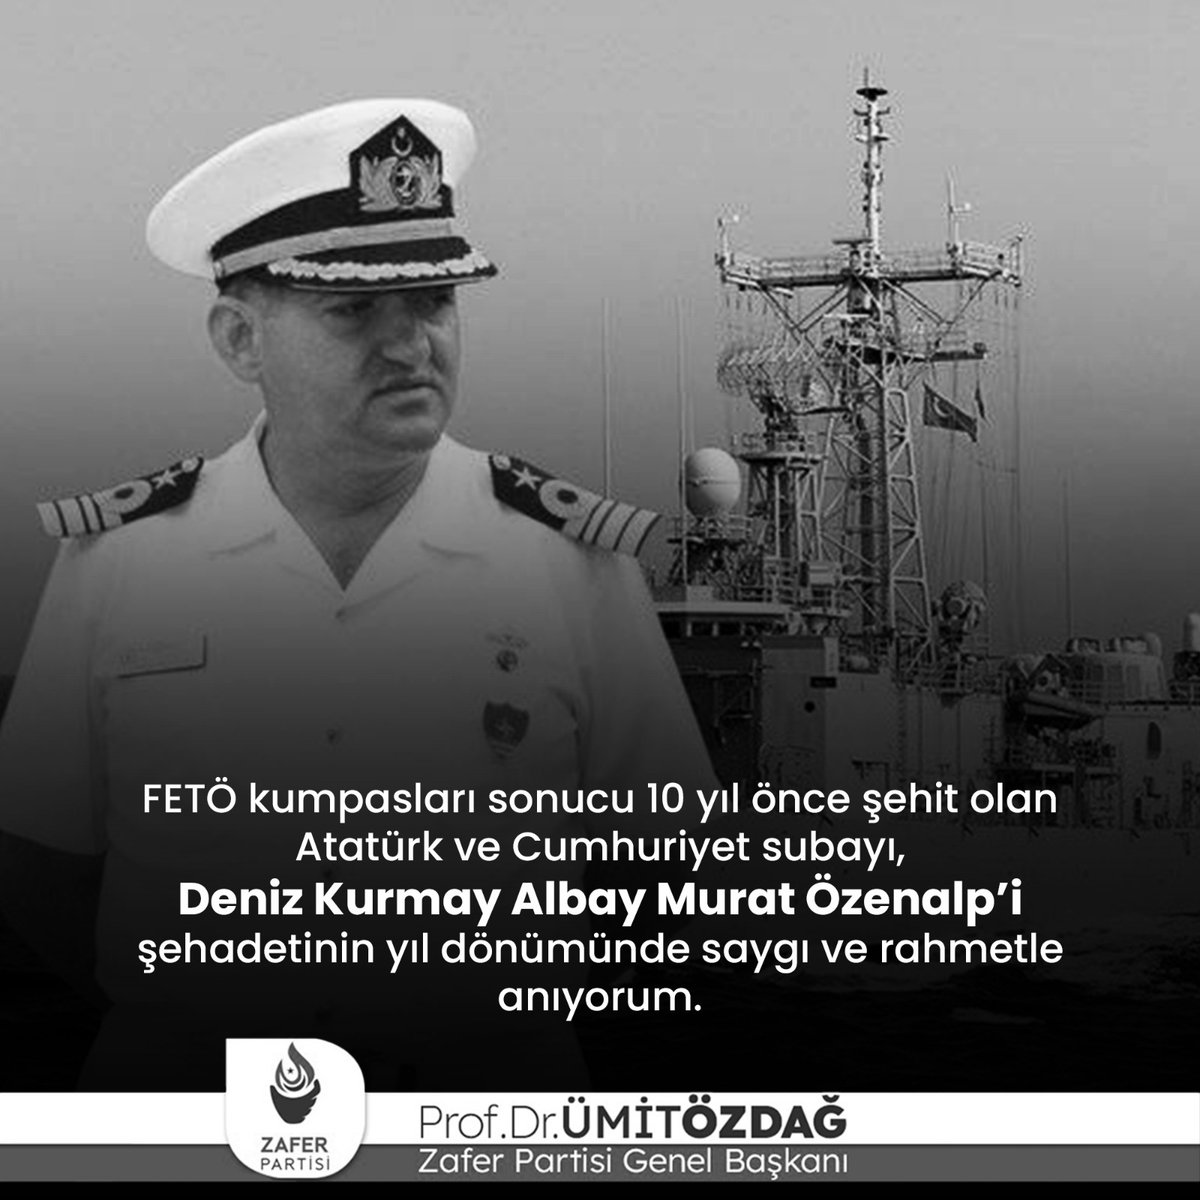 FETÖ kumpasları sonucu 10 yıl önce şehit olan Atatürk ve Cumhuriyet subayı, Deniz Kurmay Albay Murat Özenalp’i şehadetinin yıl dönümünde saygı ve rahmetle anıyorum.